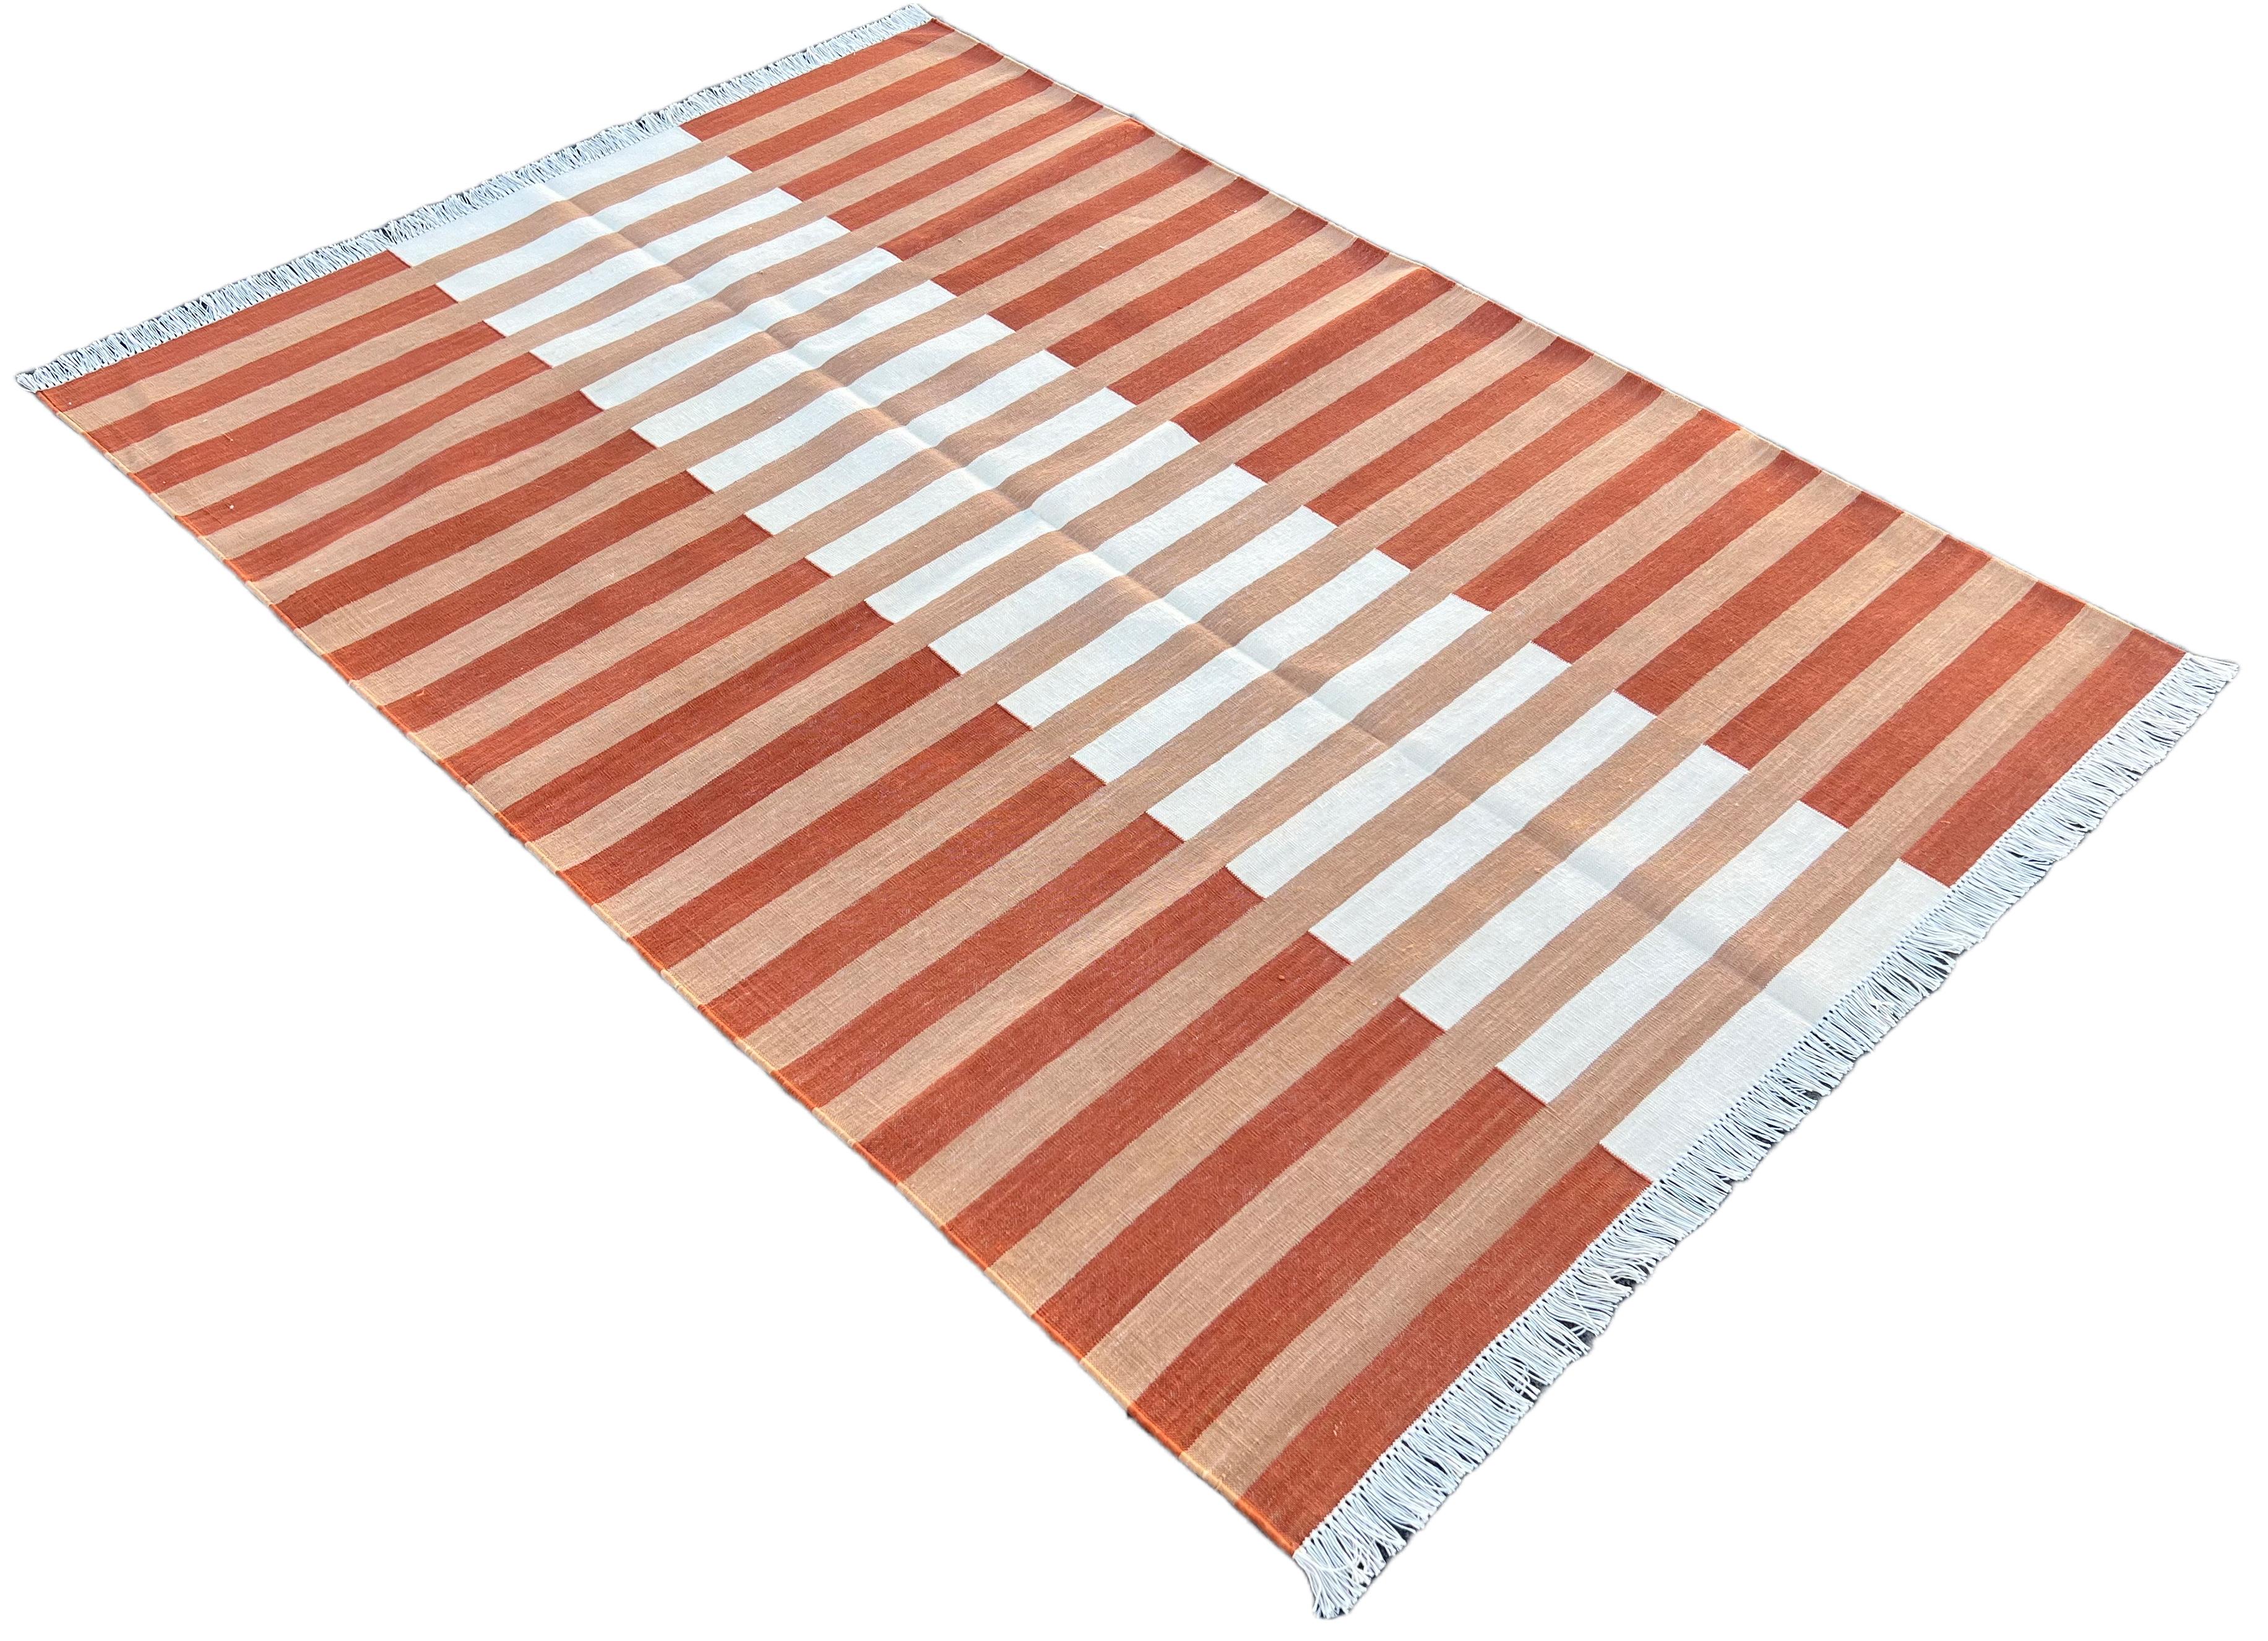 Baumwolle pflanzlich gefärbt Tan und weiß gestreiften indischen Dhurrie Teppich-4'x6' 

Diese speziellen flachgewebten Dhurries werden aus 15-fachem Garn aus 100% Baumwolle handgewebt. Aufgrund der speziellen Fertigungstechniken, die zur Herstellung